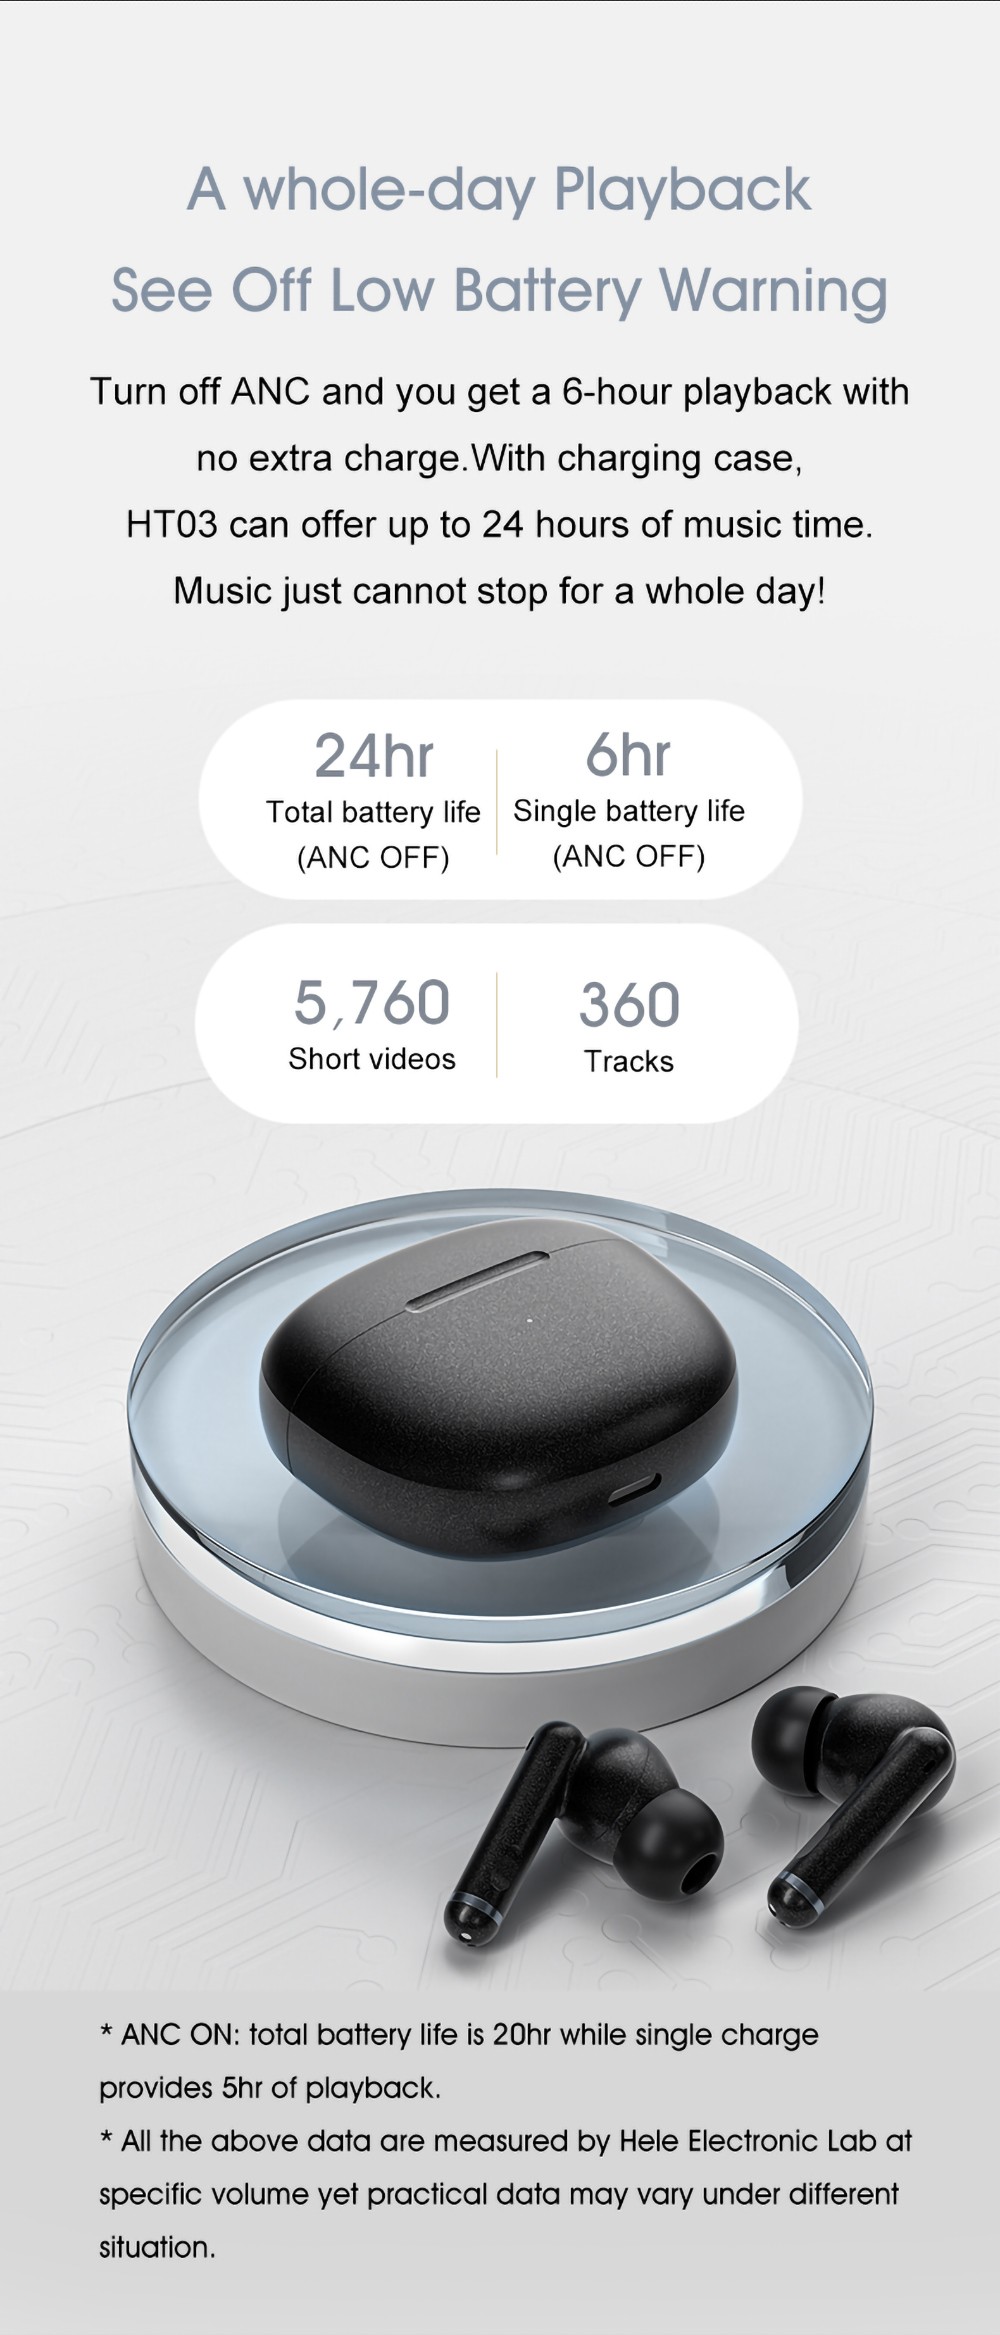 QCY HT03 Bluetooth 5.1 TWS Aktywne bezprzewodowe słuchawki douszne z redukcją szumów